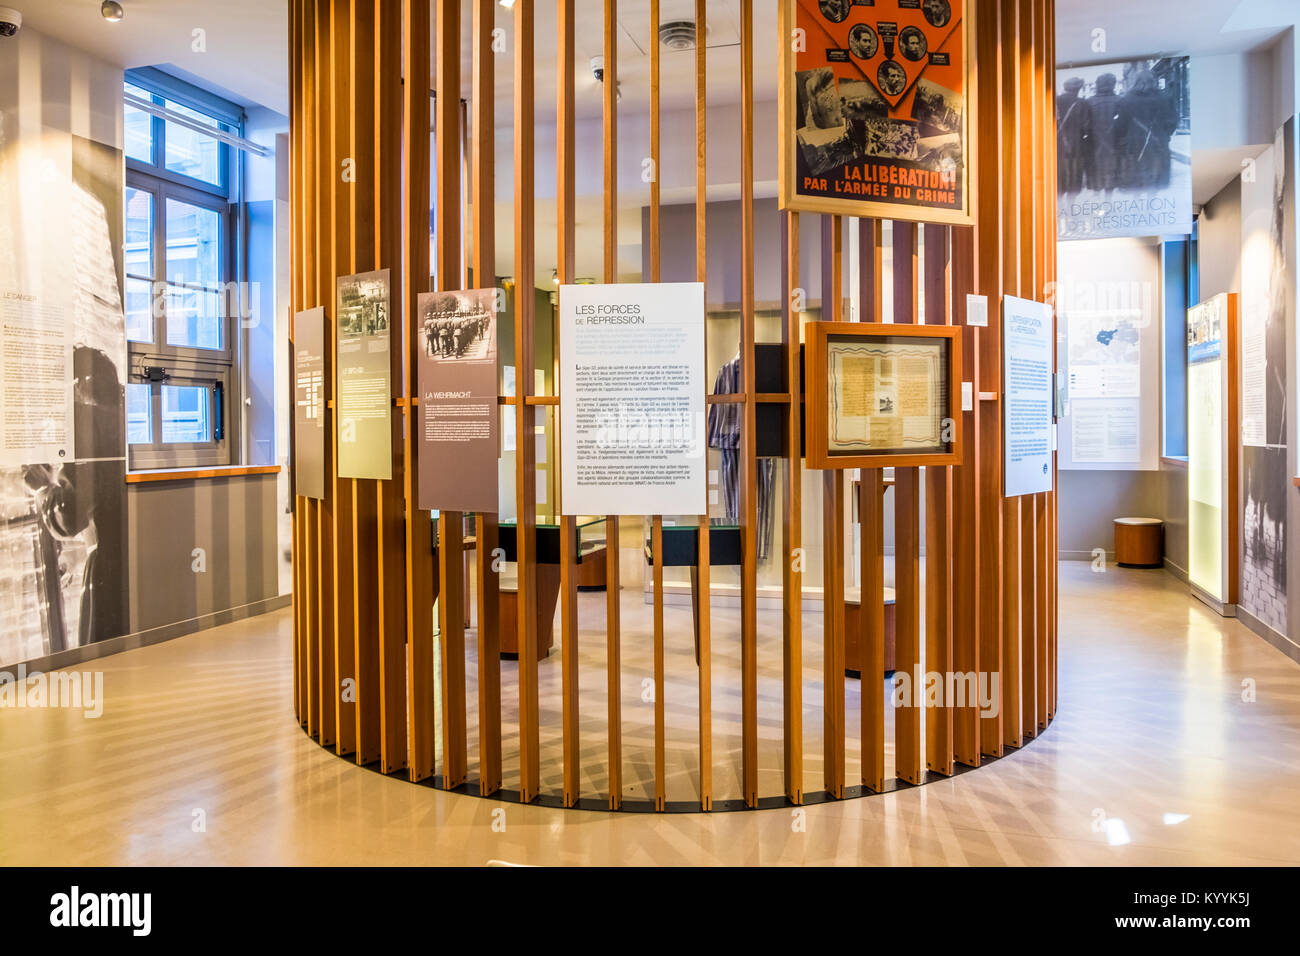 Musée de la résistance et de la déportation a également connu sous le nom de Centre d'histoire de la résistance et de la déportation à Lyon, France Banque D'Images